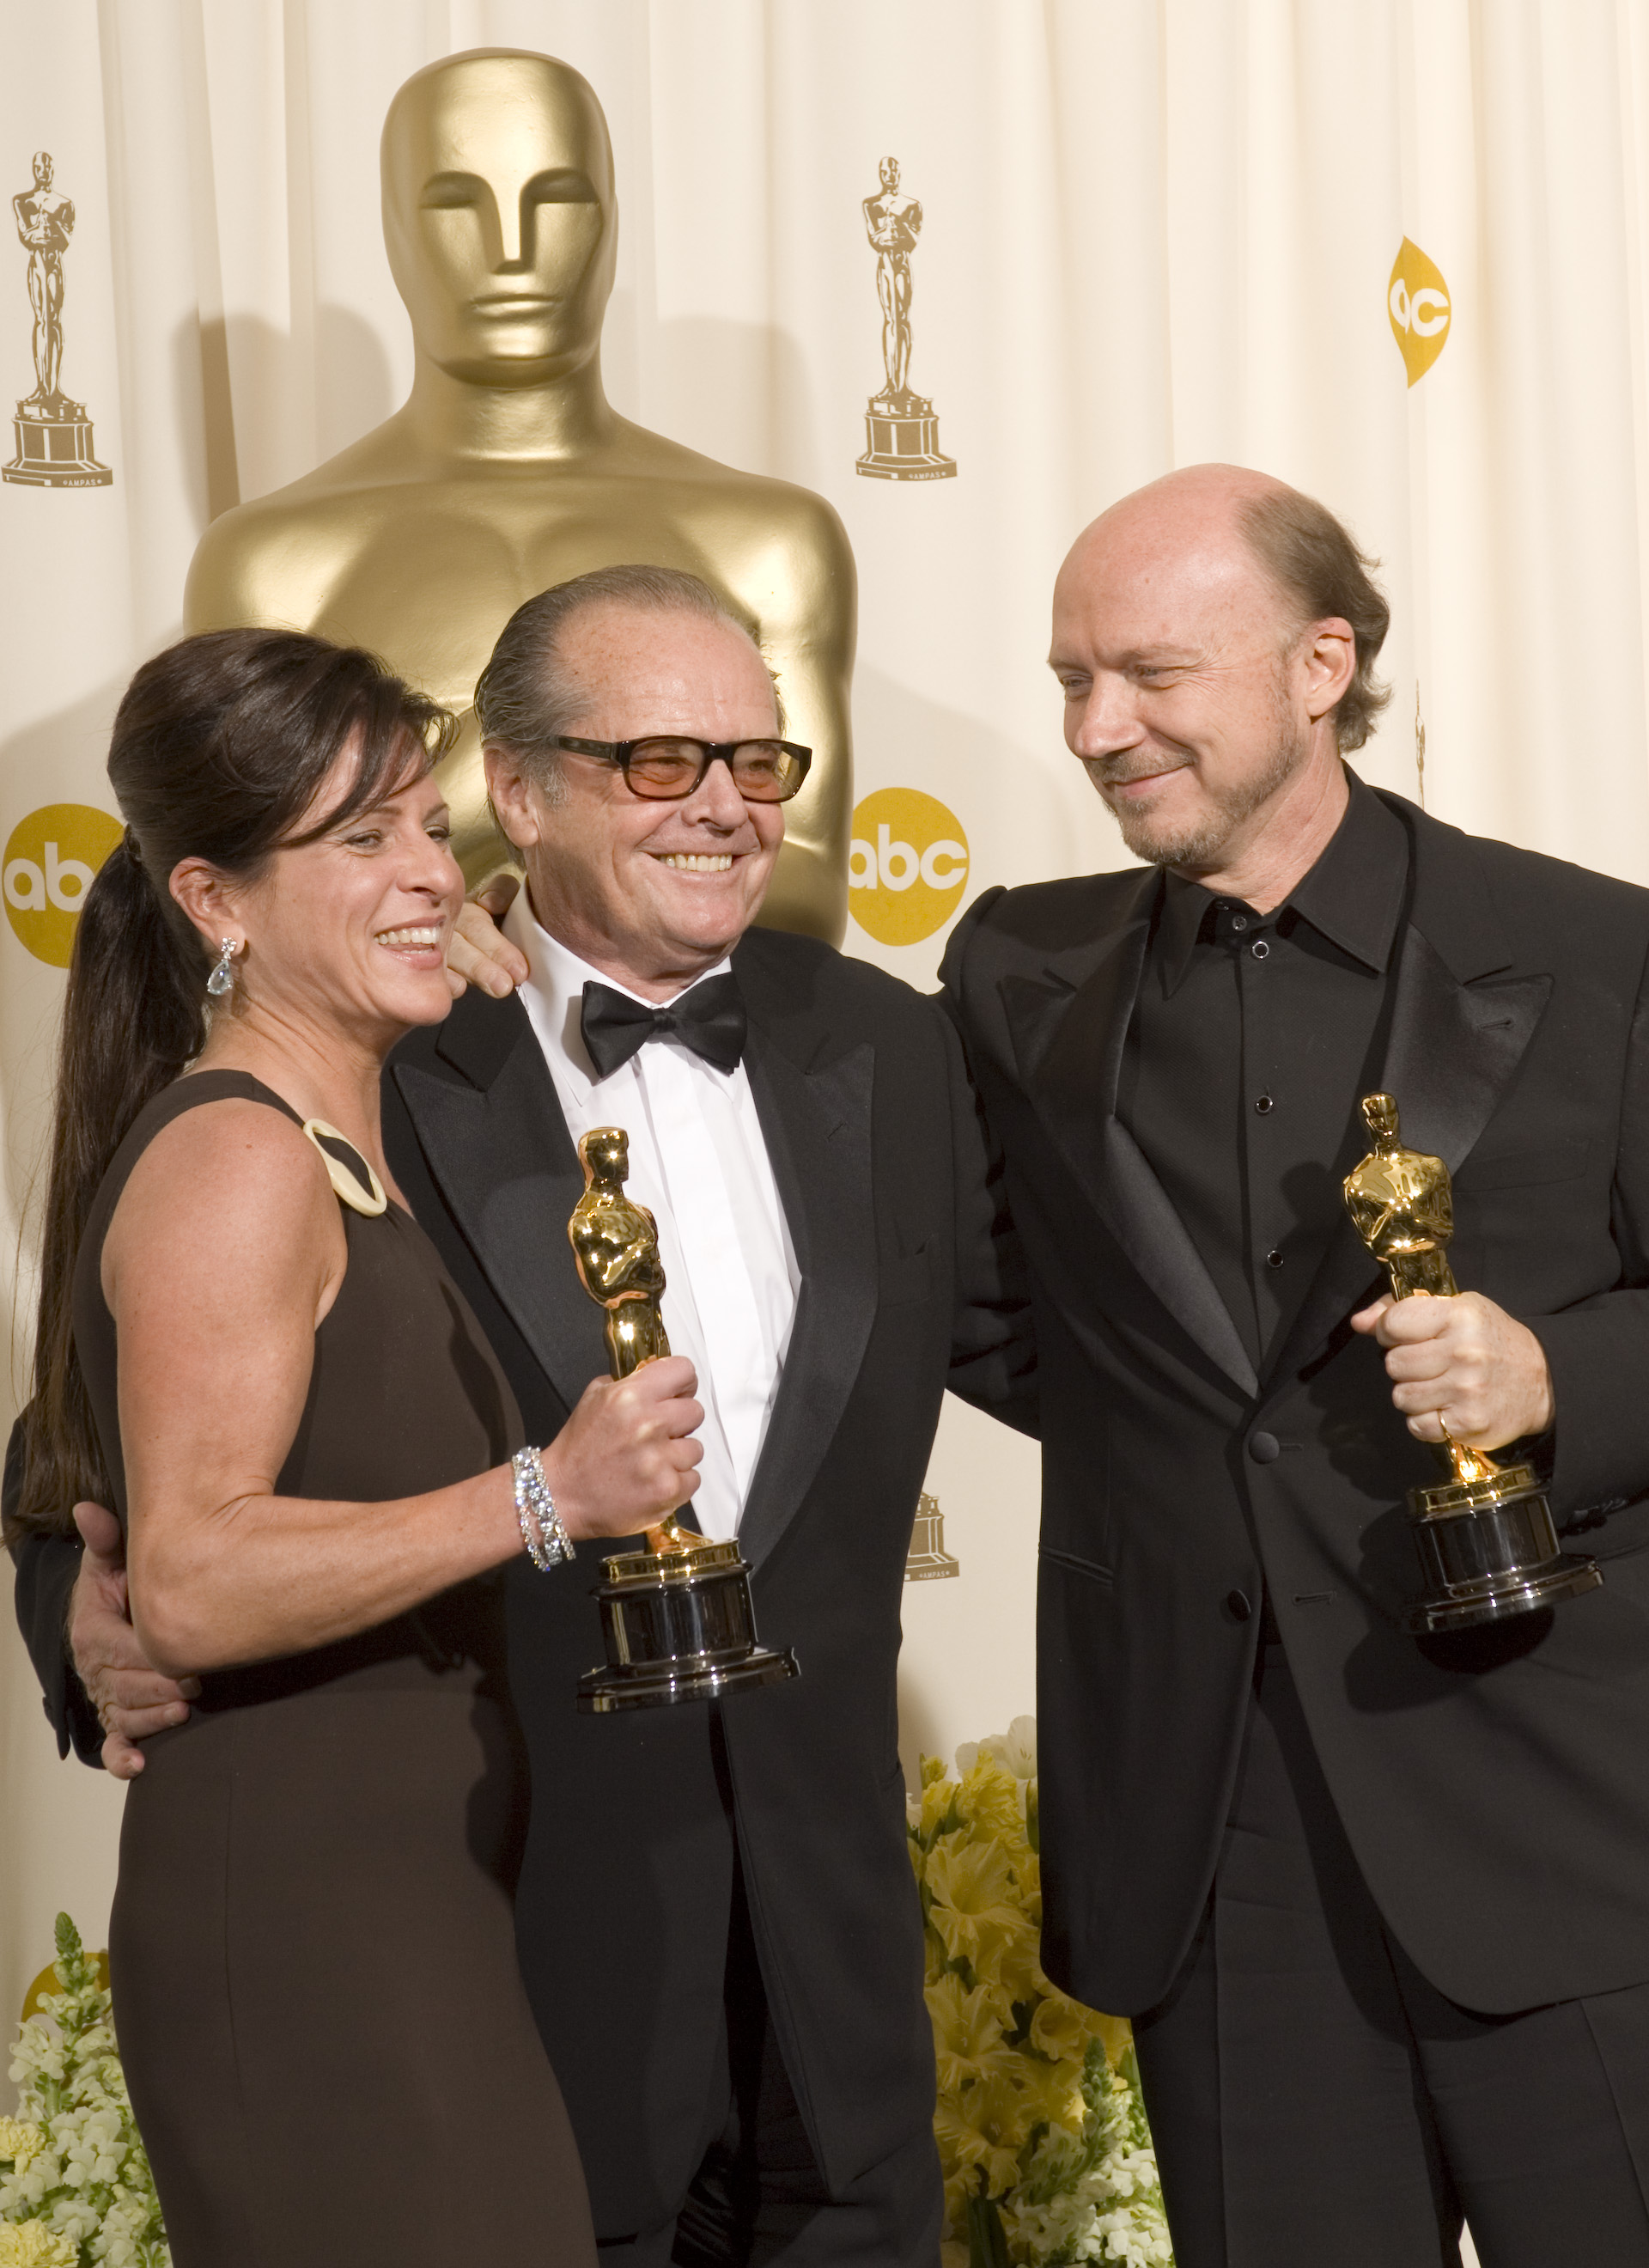 Cathy Schulman, producer, Jack Nicholson és Paul Haggis író, producer, rendező